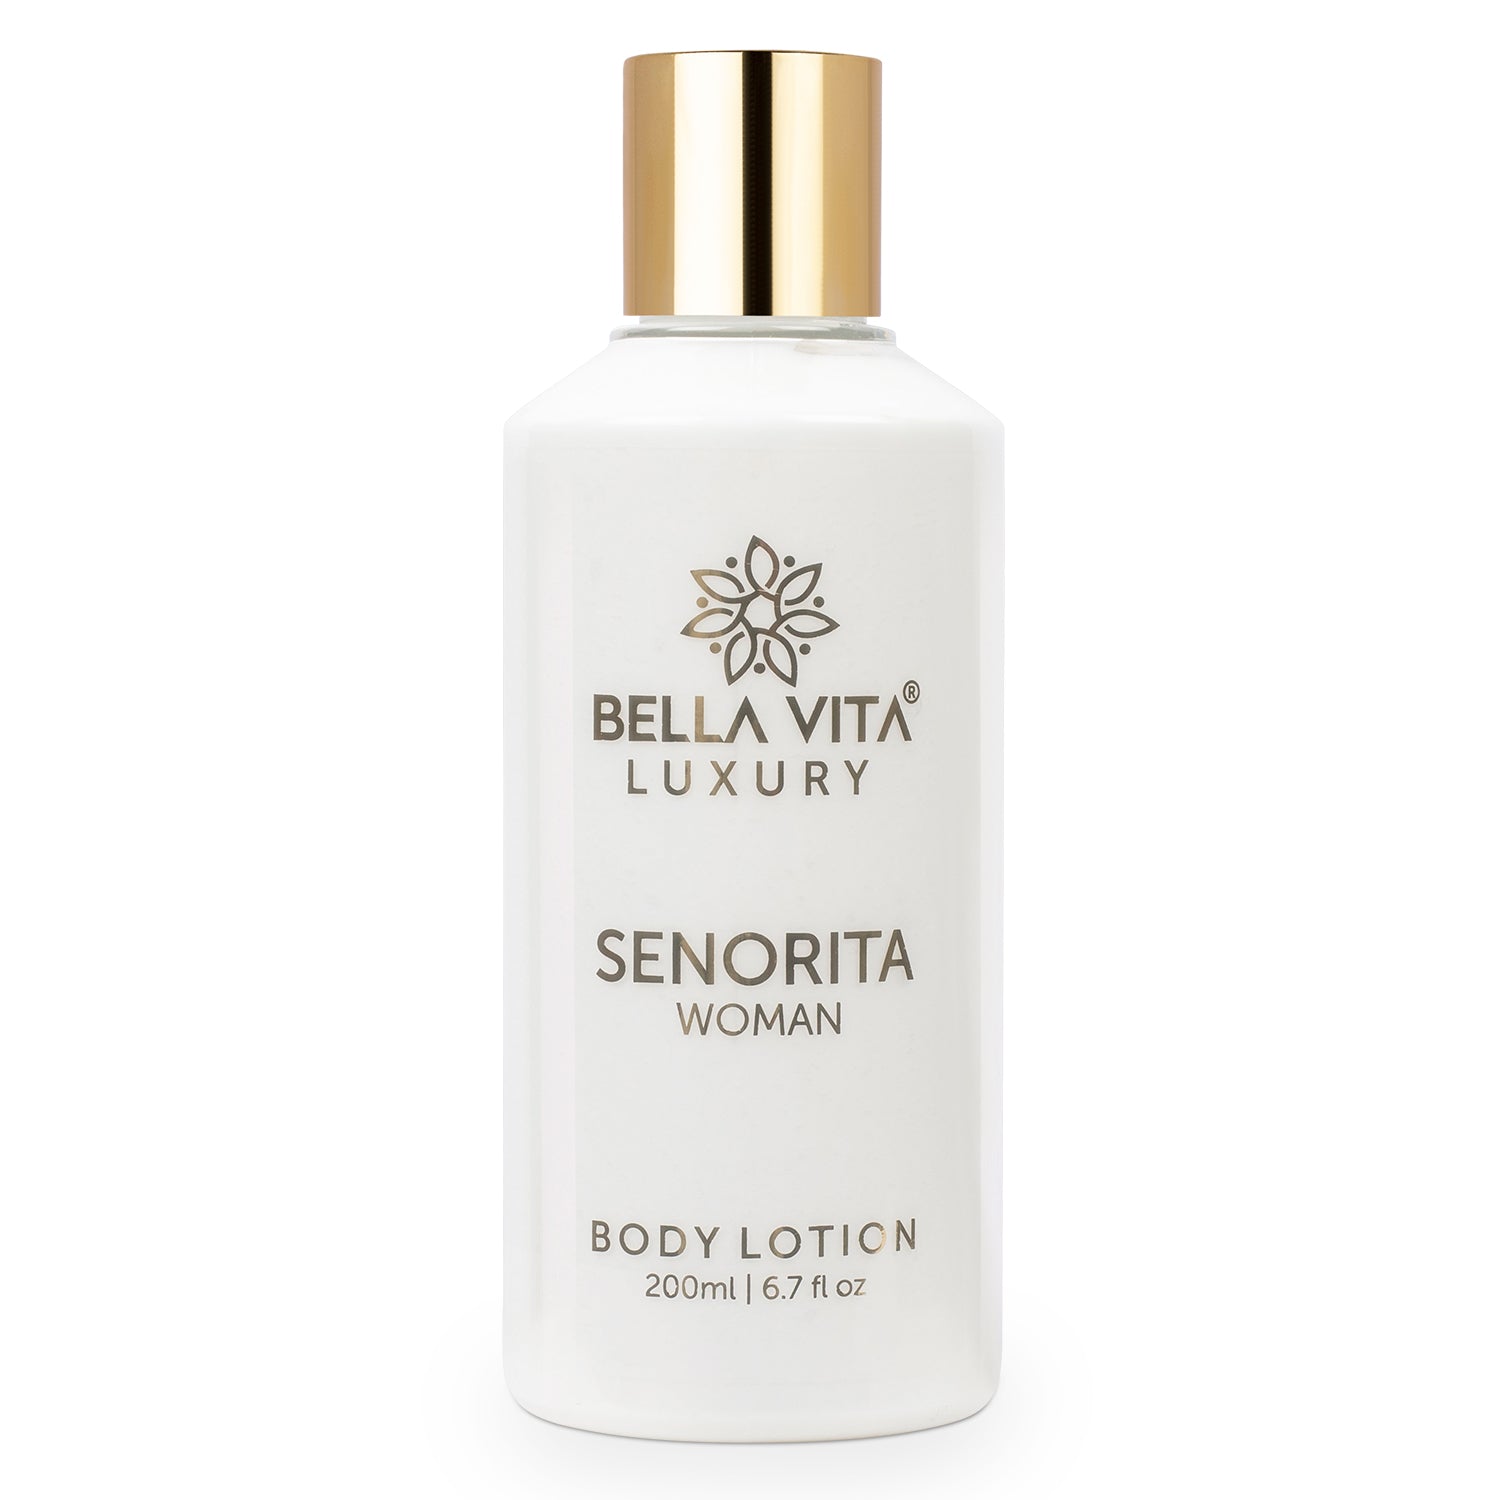 SENORITA WOMAN Body Lotion - Bella Vita Luxury